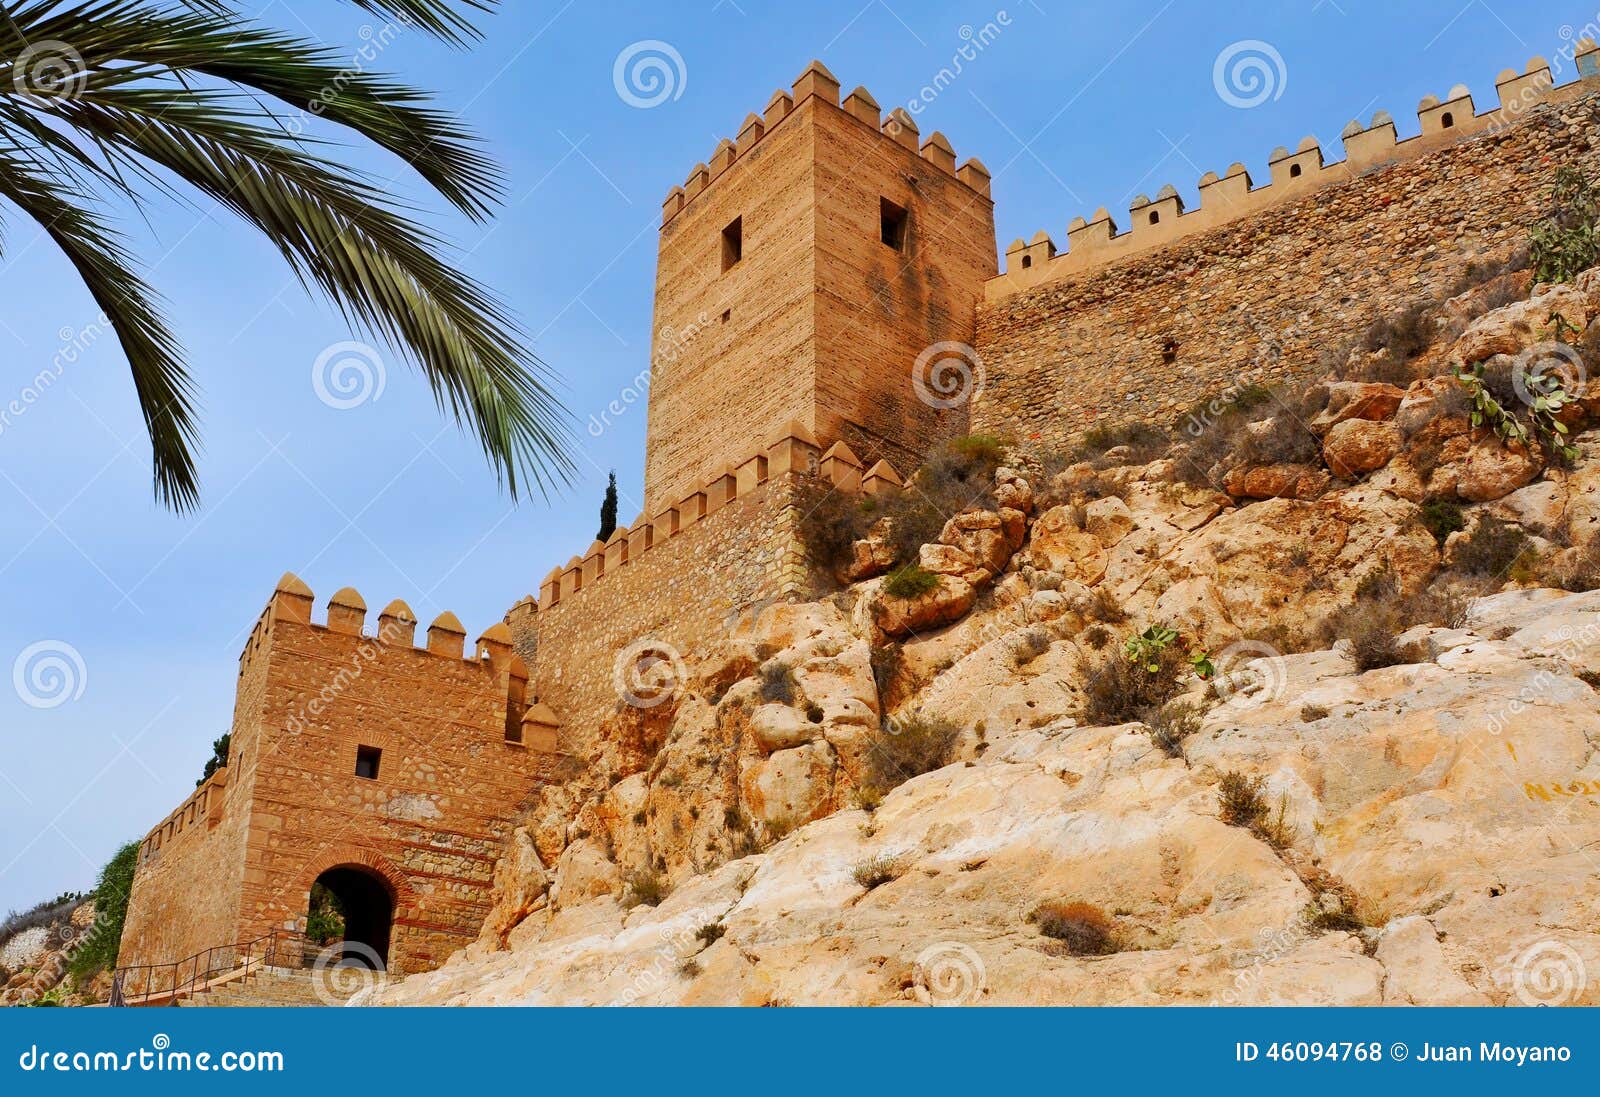 Alcazaba av Almeria, i Almeria, Spanien. En sikt av väggarna av Alcazabaen av Almeria, i Almeria, Spanien